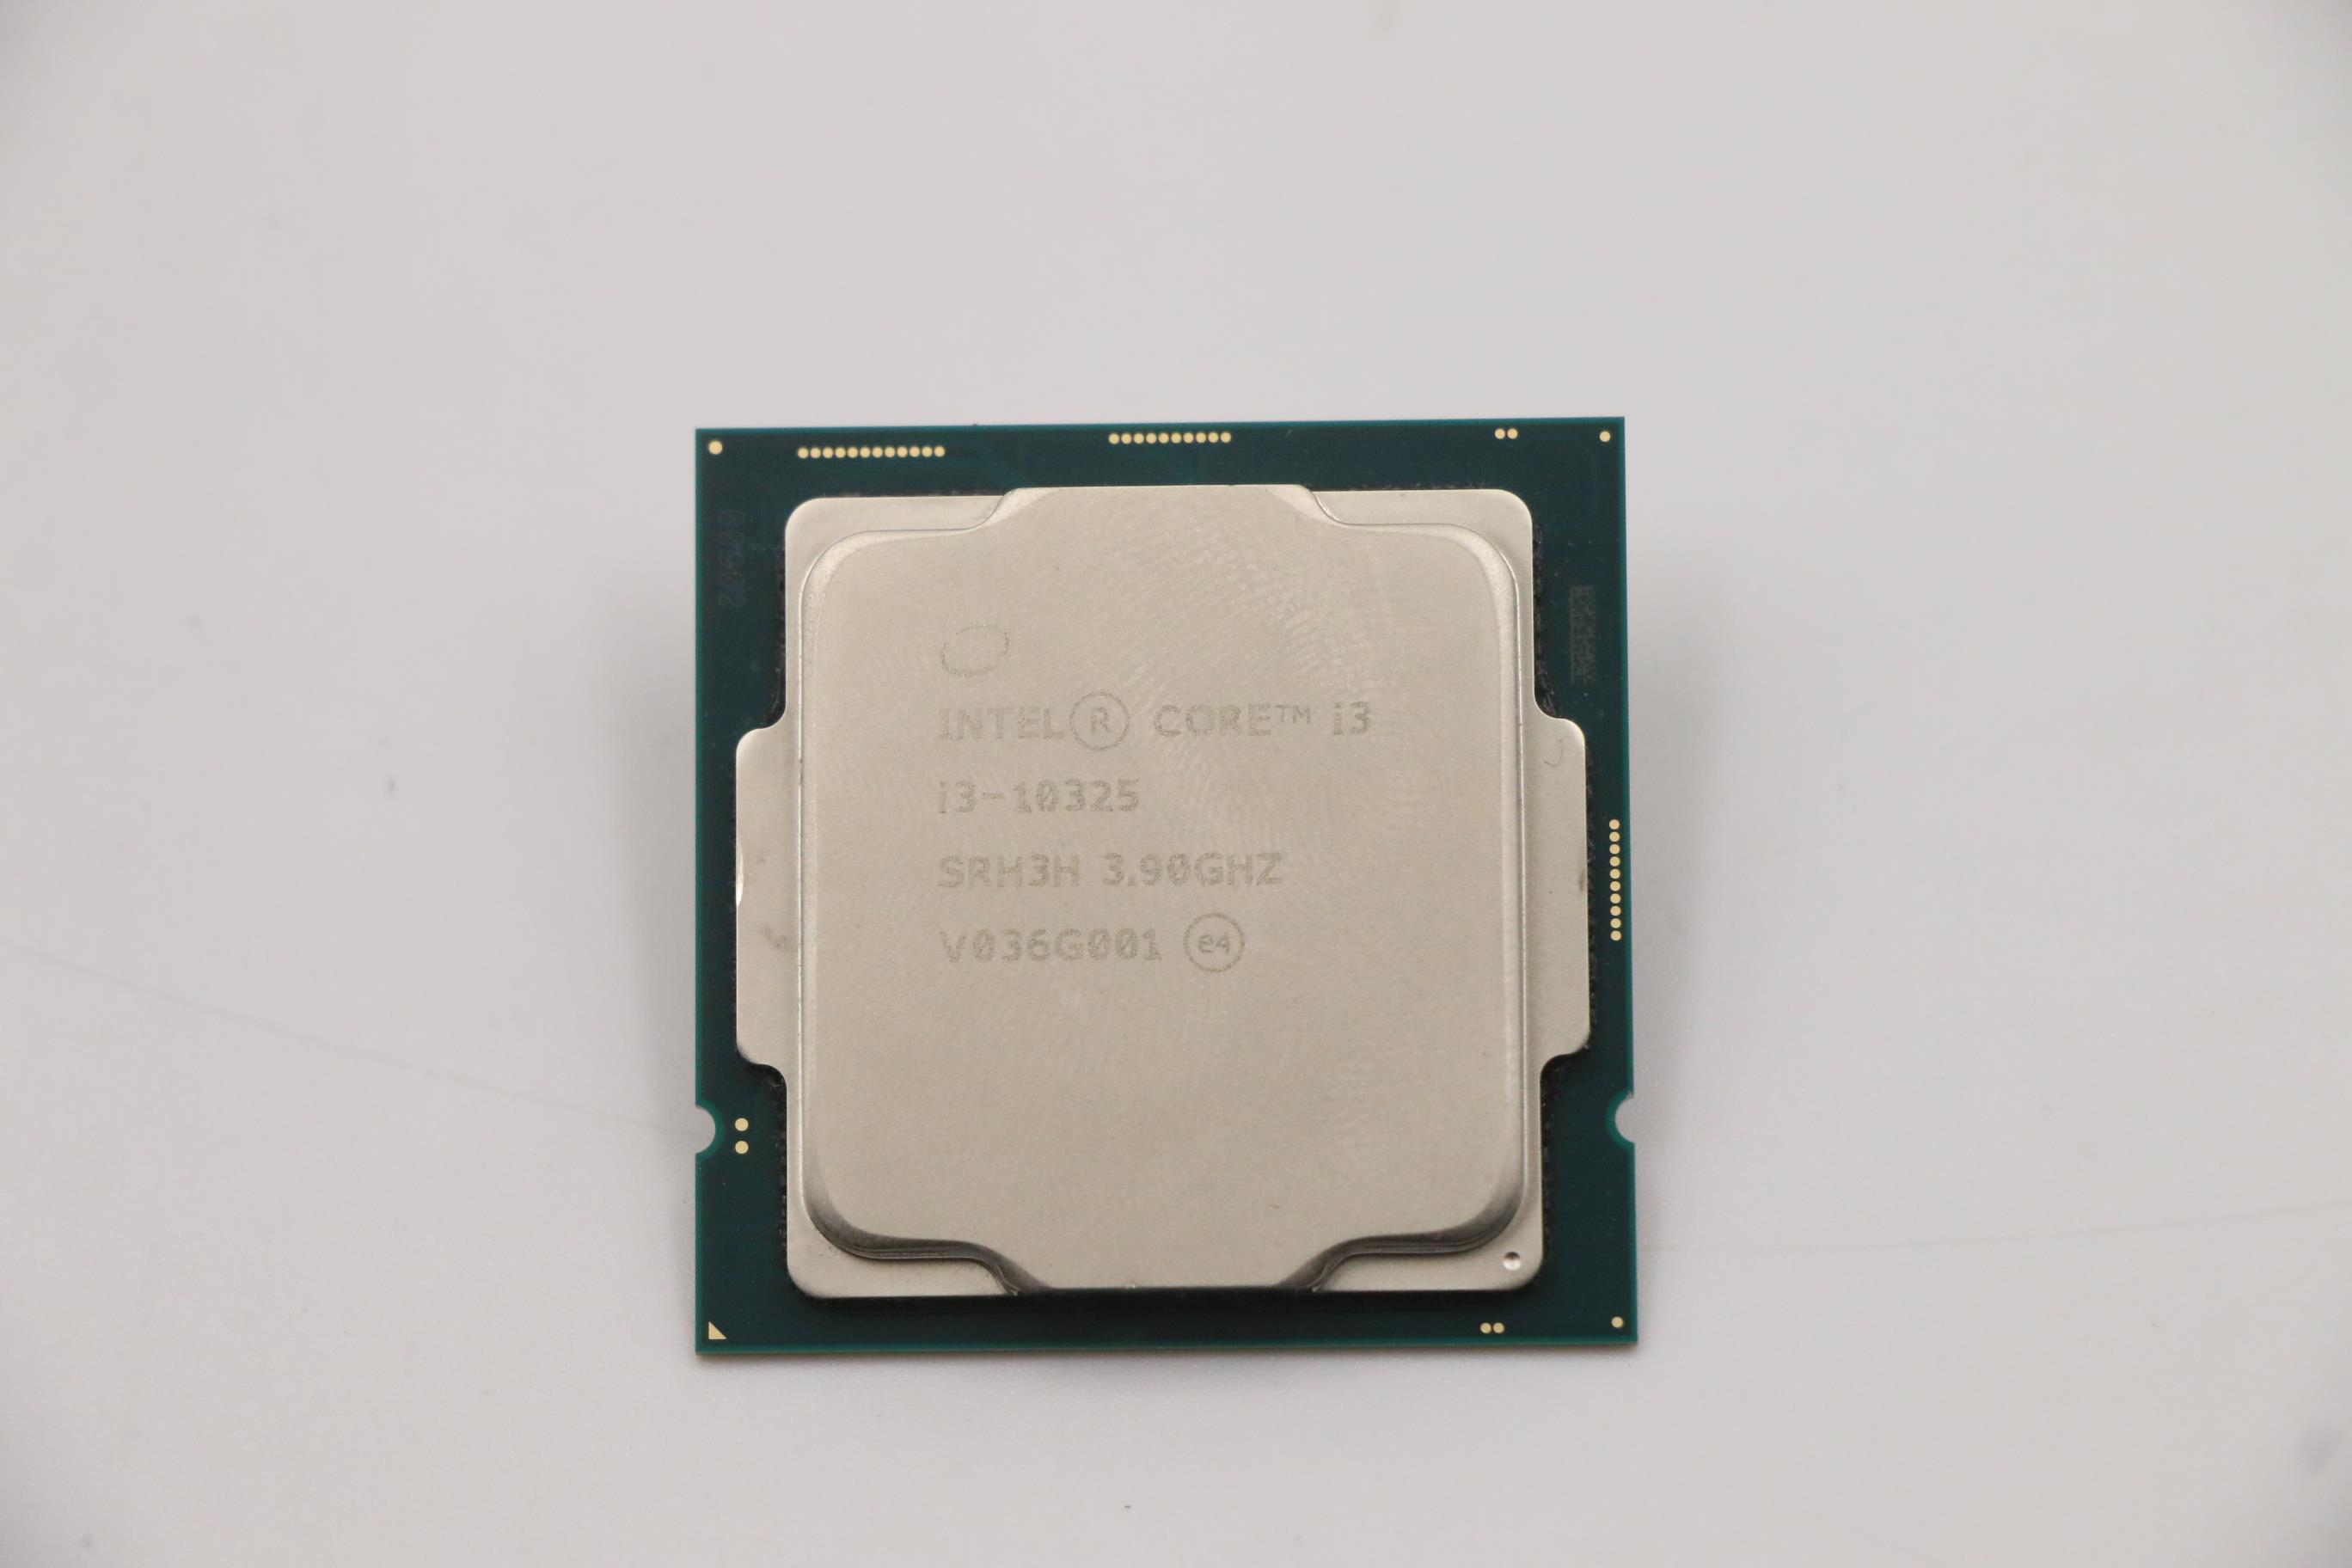 Lenovo Part  Original Lenovo FRU Intel i3-10325 3.9GHz/4C/8M 65W DDR4 2666